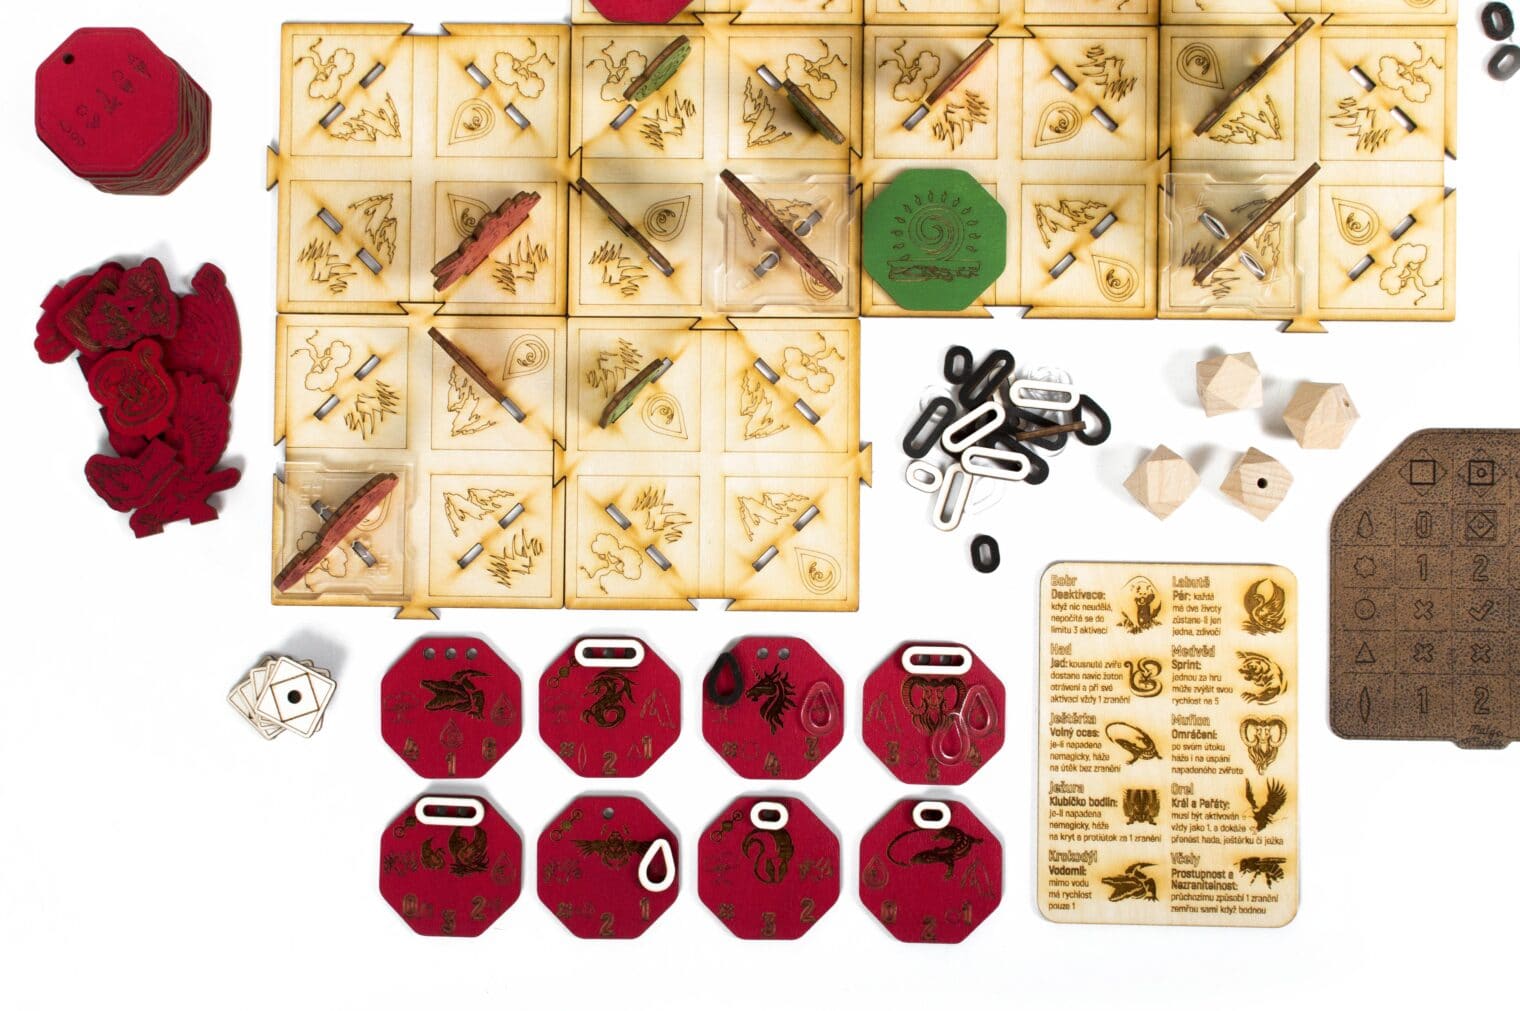 Desková hra WILDERNESS WHITE - červenozelená sběratelská edice - detail 5